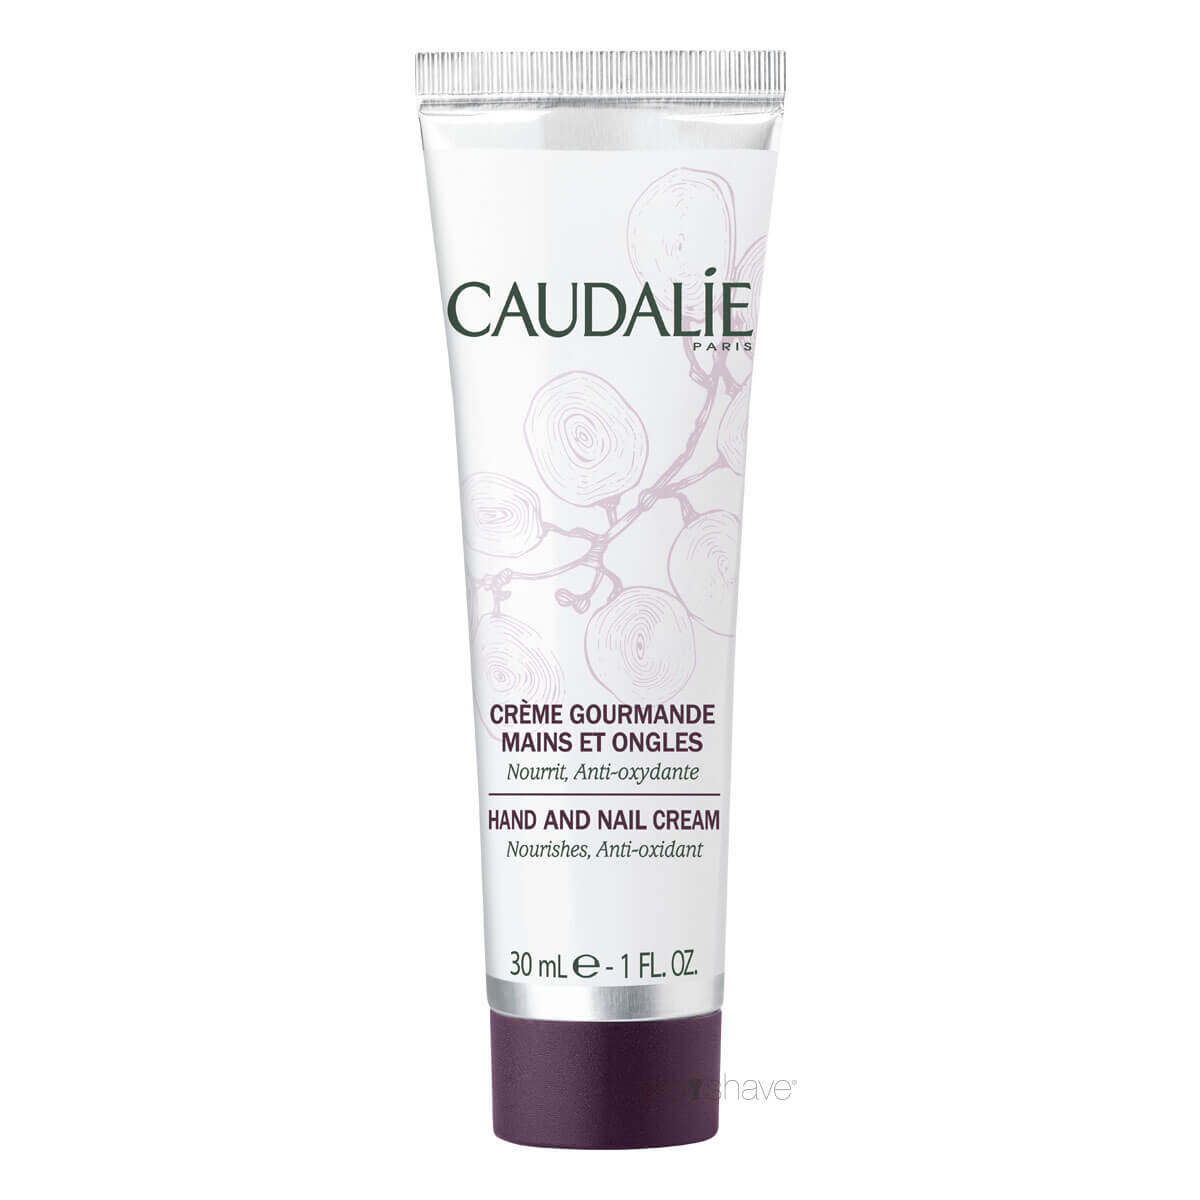 Caudalie Hand & Nail Cream, 30 ml.